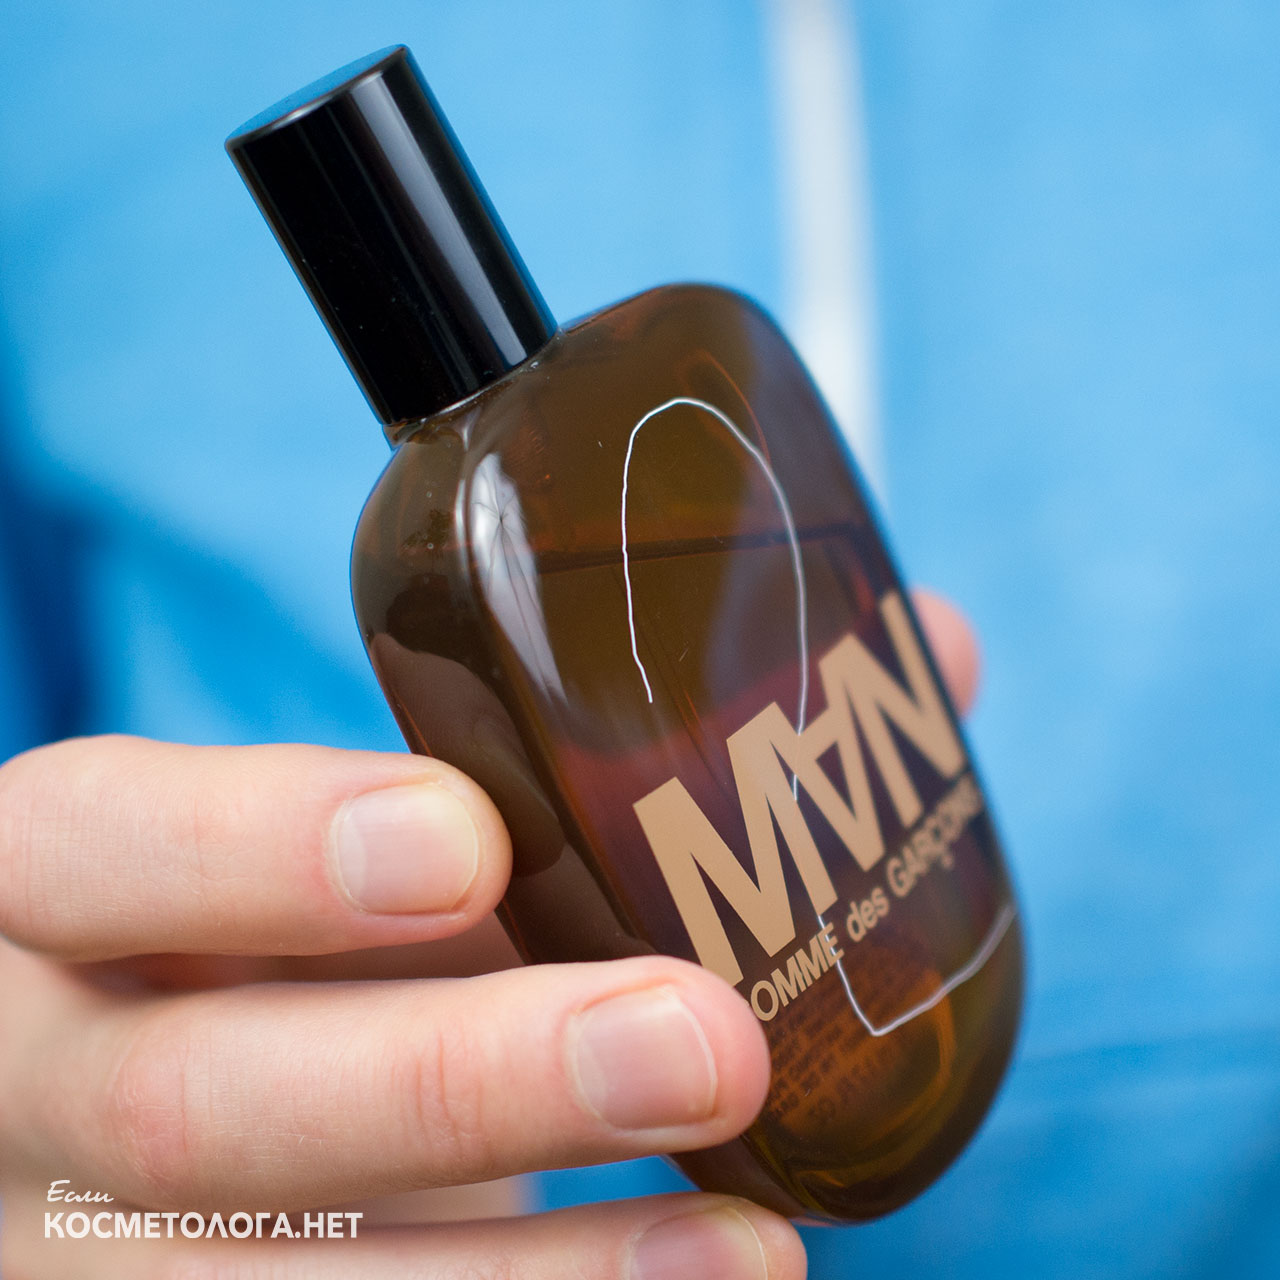 Дешёвый запах дезодоранта испортит впечатление от хорошего парфюма